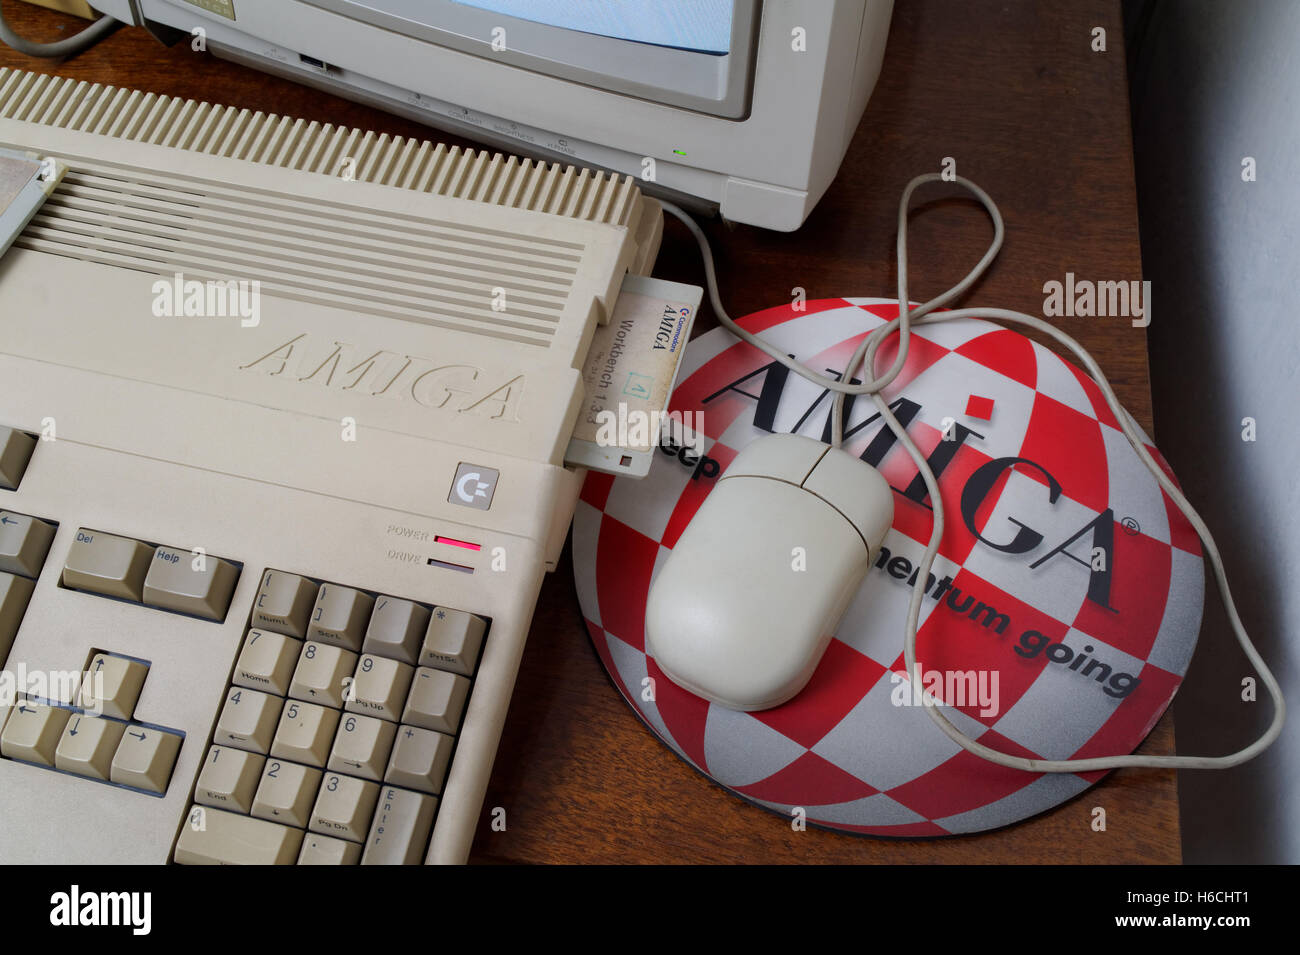 Amiga 500, Souris et tapis sur la table Banque D'Images